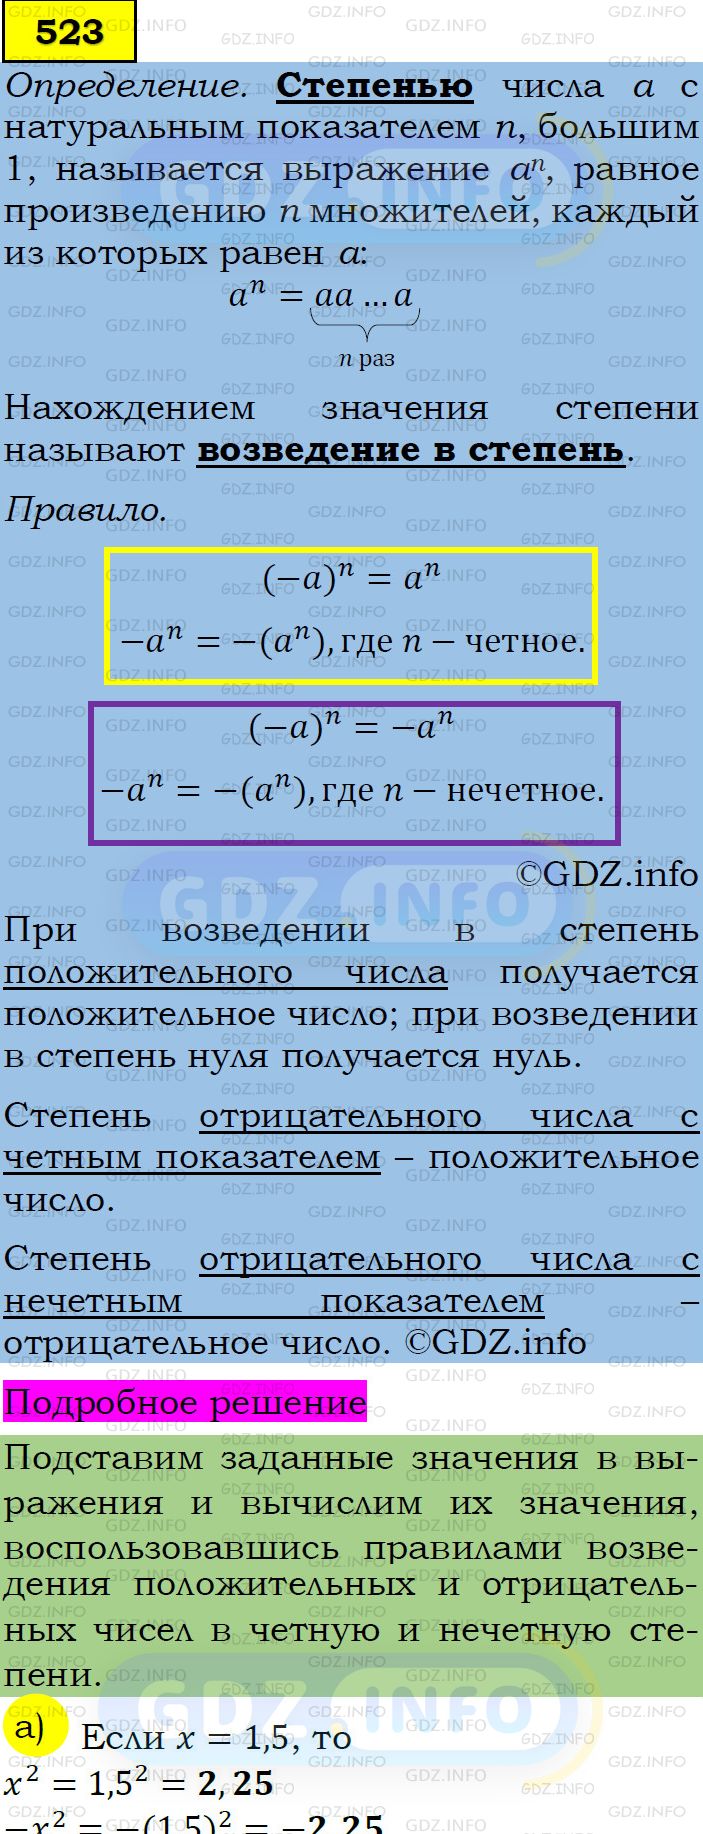 Фото подробного решения: Номер задания №523 из ГДЗ по Алгебре 7 класс: Макарычев Ю.Н.